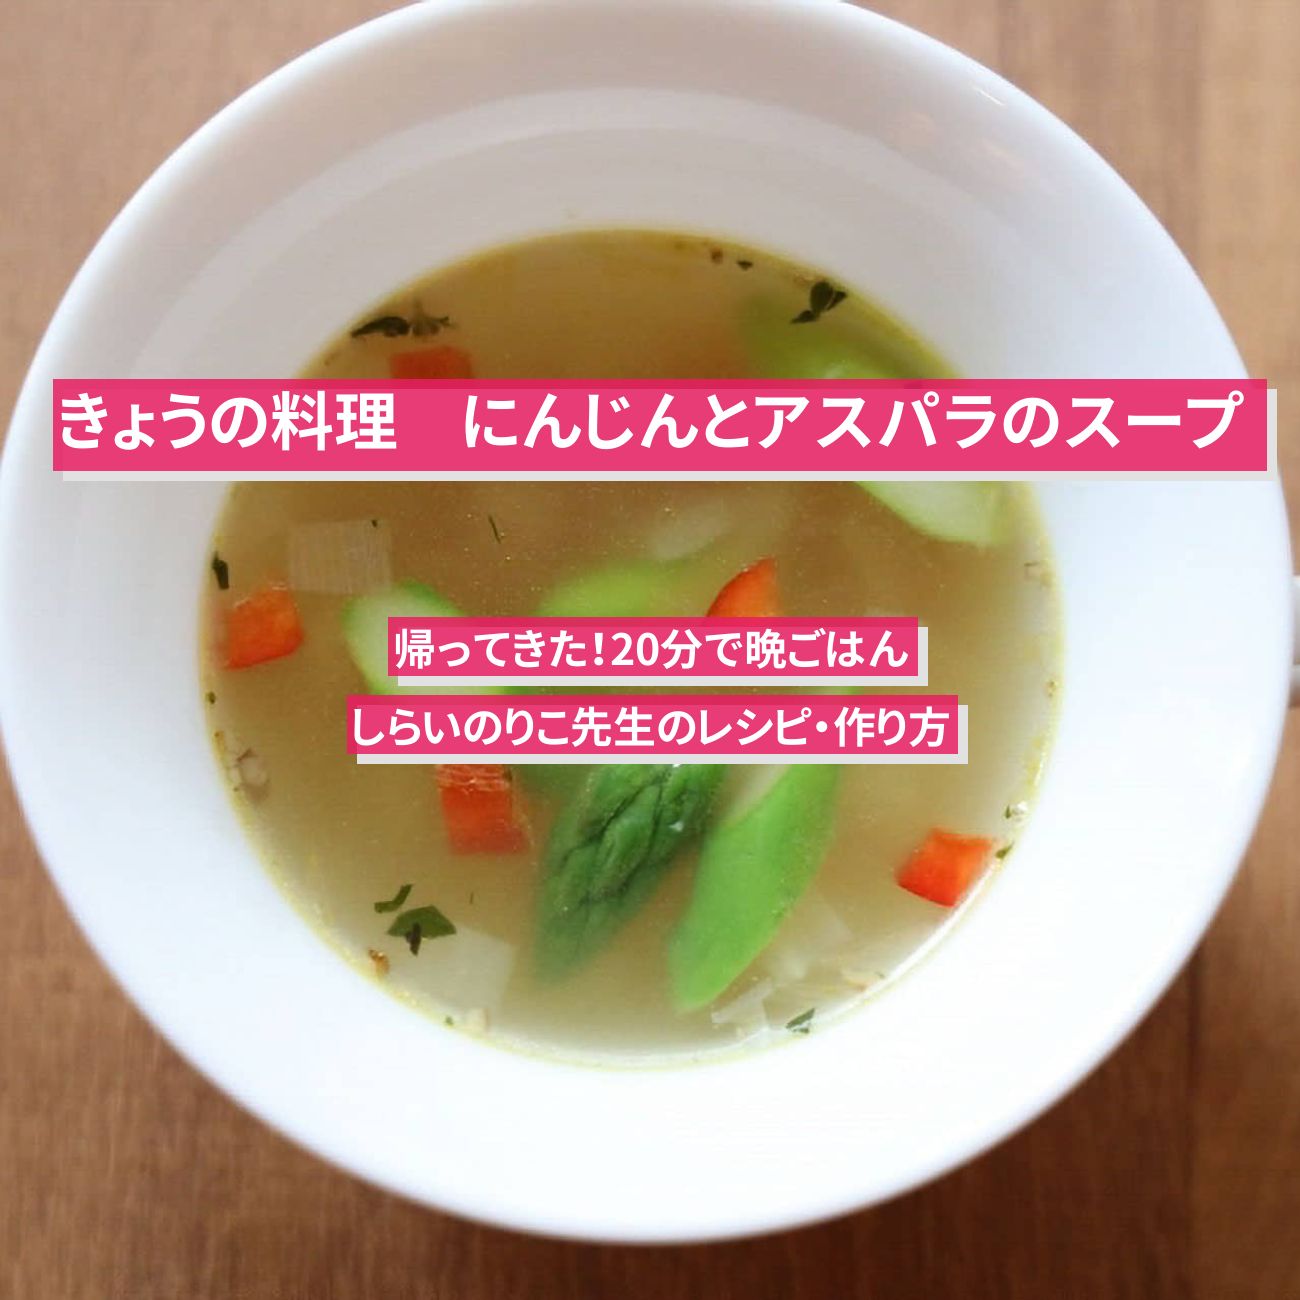 【きょうの料理】『にんじんとアスパラのスープ』しらいのりこ先生のレシピ・作り方